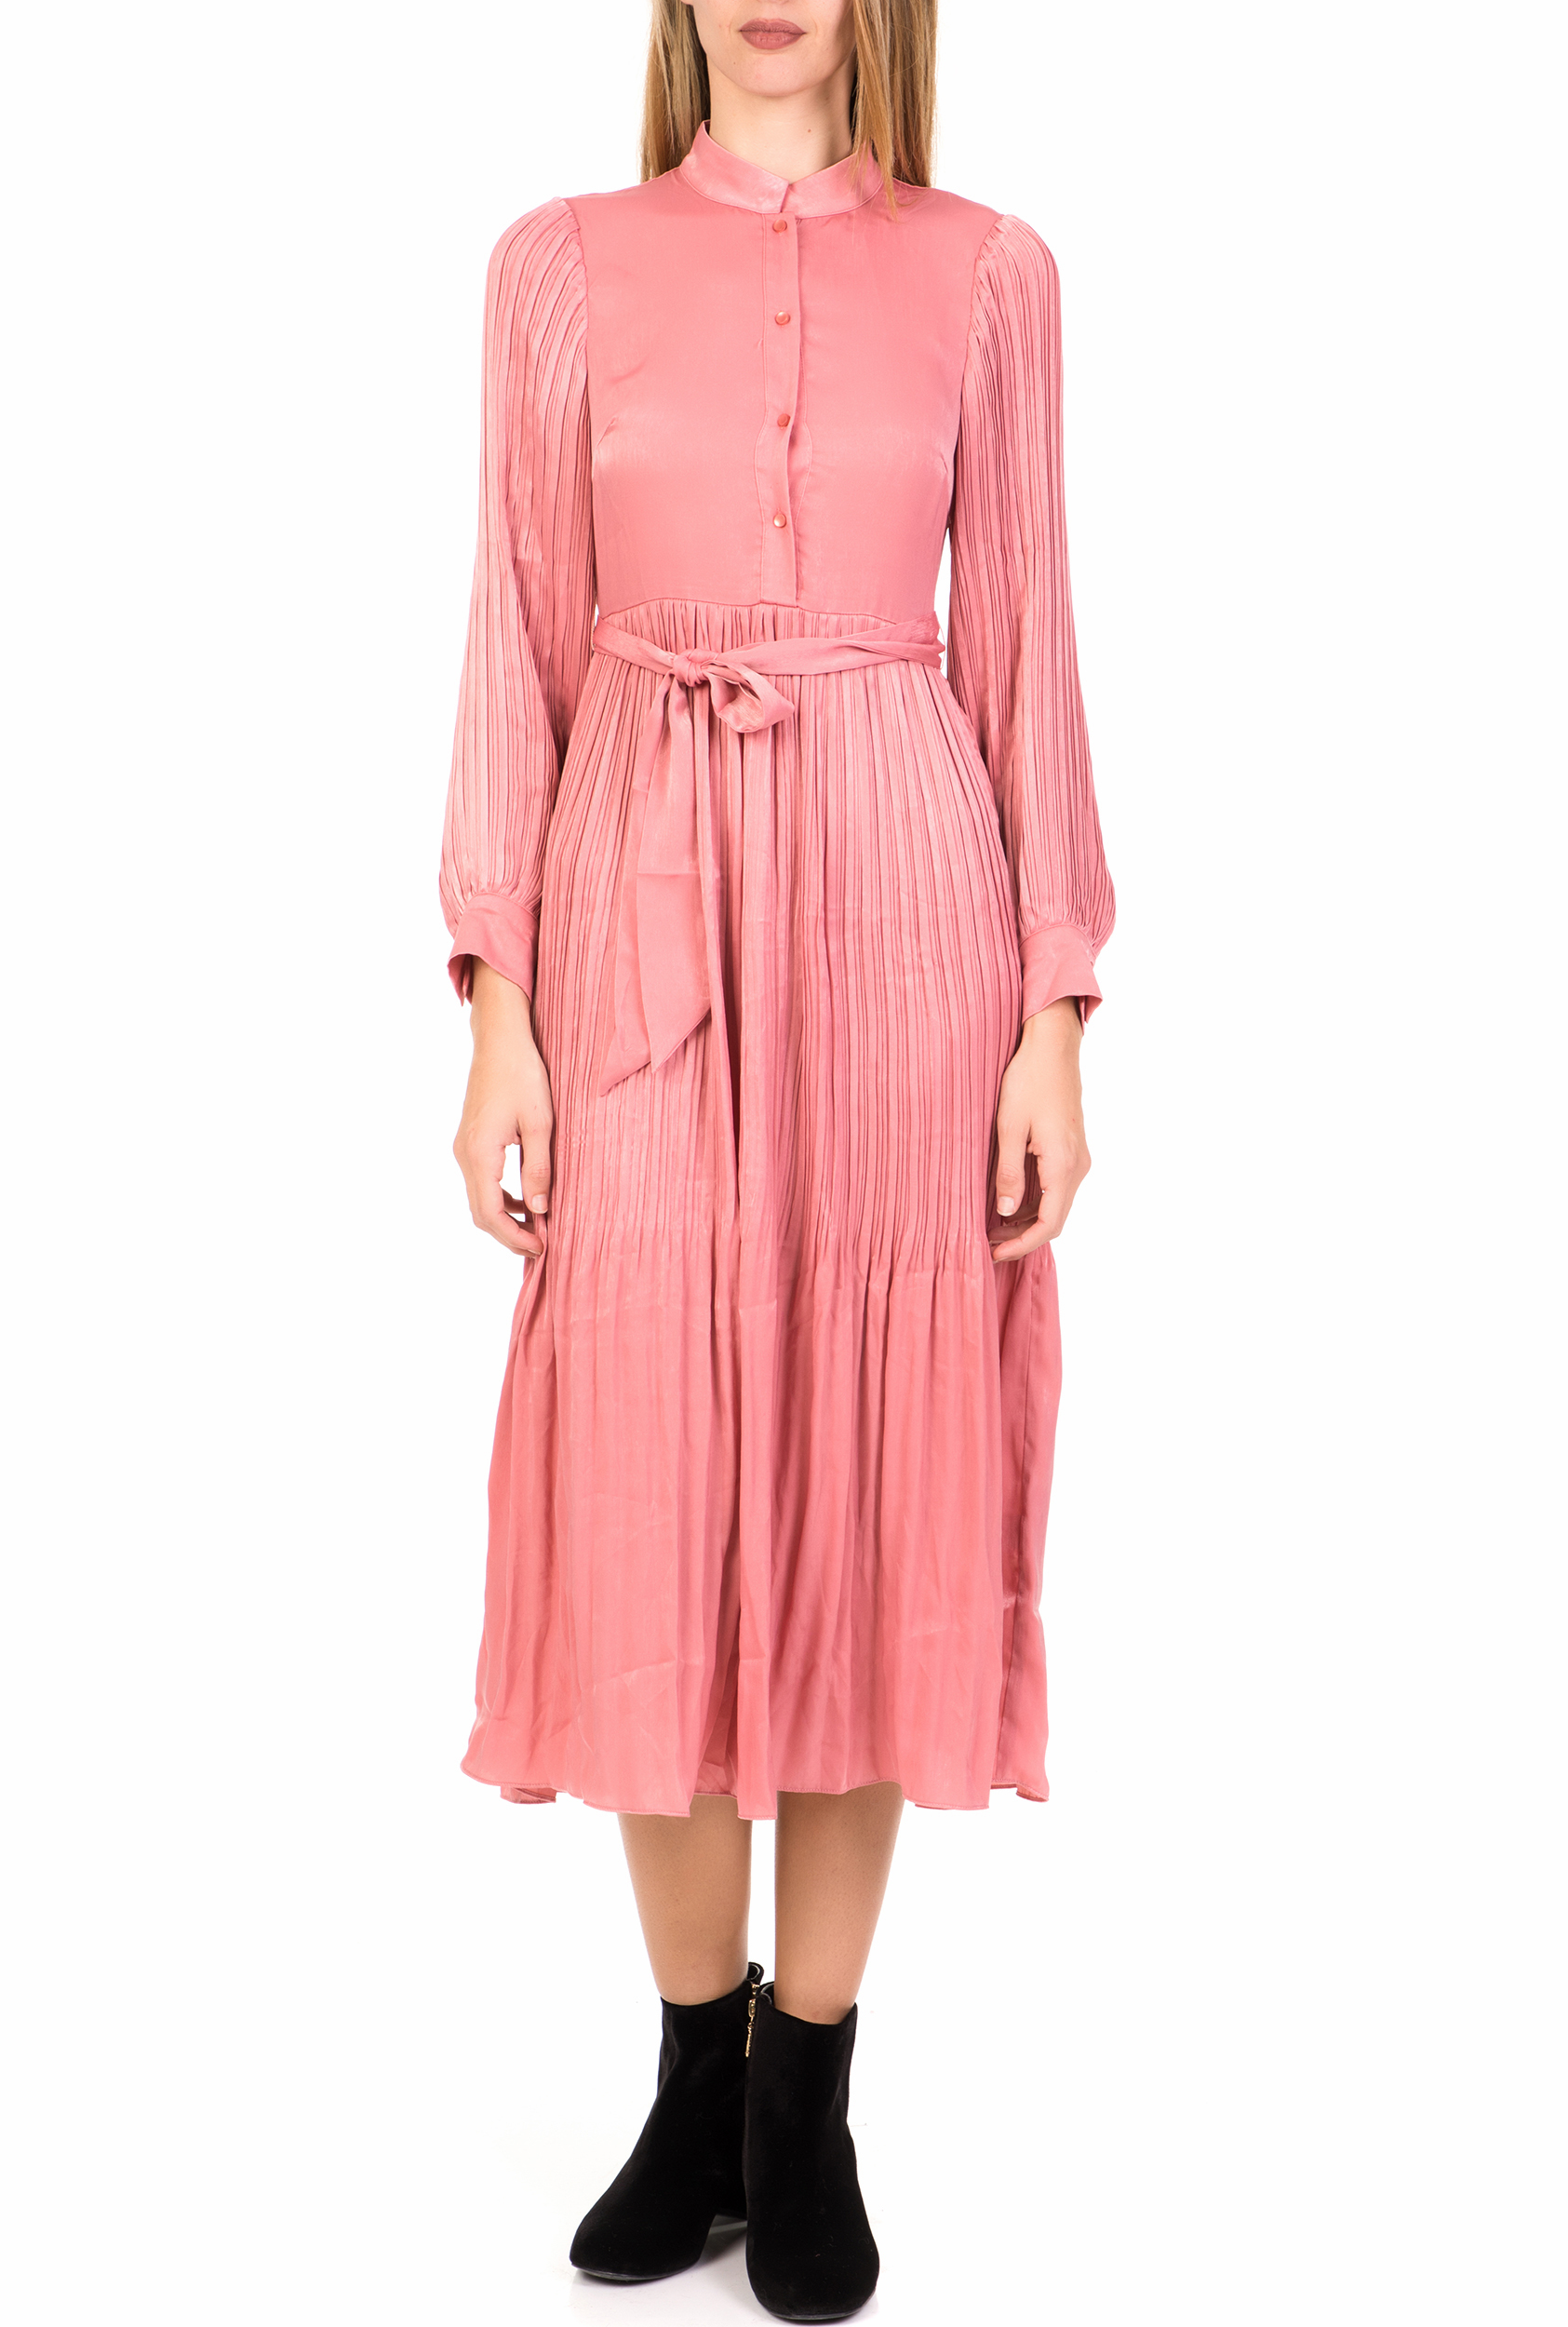 Γυναικεία/Ρούχα/Φόρεματα/Μέχρι το γόνατο TRAFFIC PEOPLE - Γυναικείο midi φόρεμα TRAFFIC PEOPLE It's All About Eve Falls ροζ